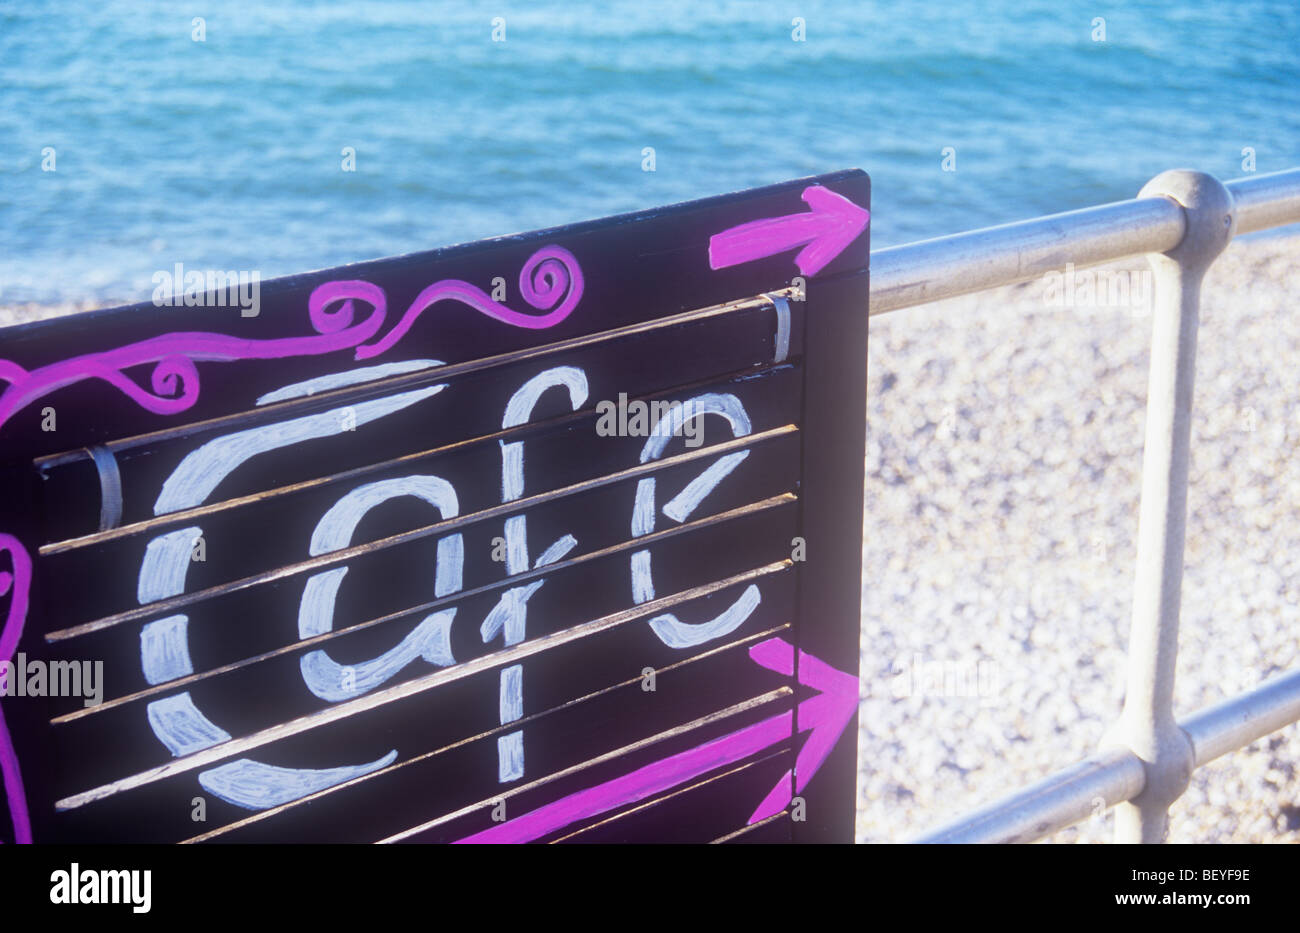 Handgemalte jaunty anmelden, weiß und pink auf schwarz besagt Cafe und fest mit Geländer mit Kiesstrand und blaues Meer hinter Stockfoto